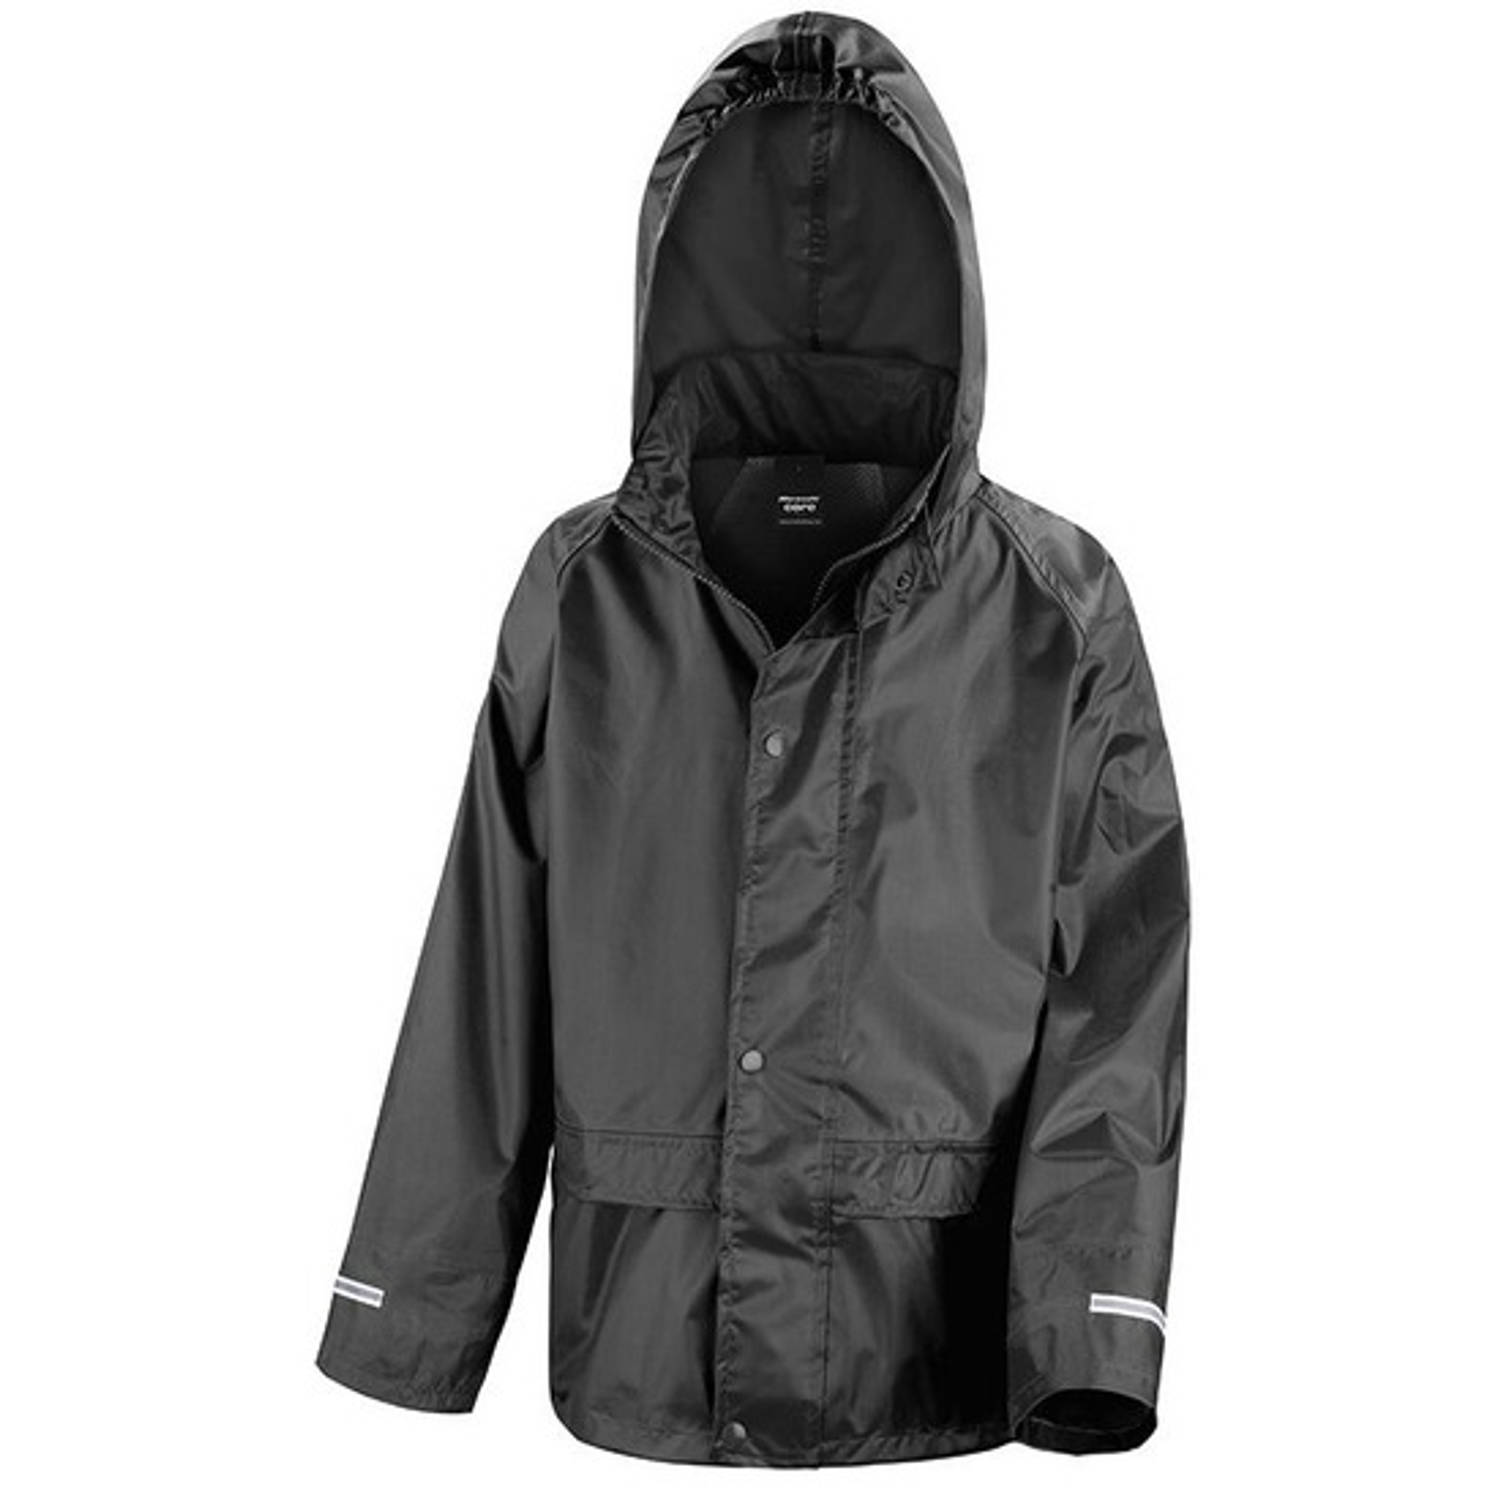 Regenjassen zwart voor meisjes XL (152-164) - Regenpakken